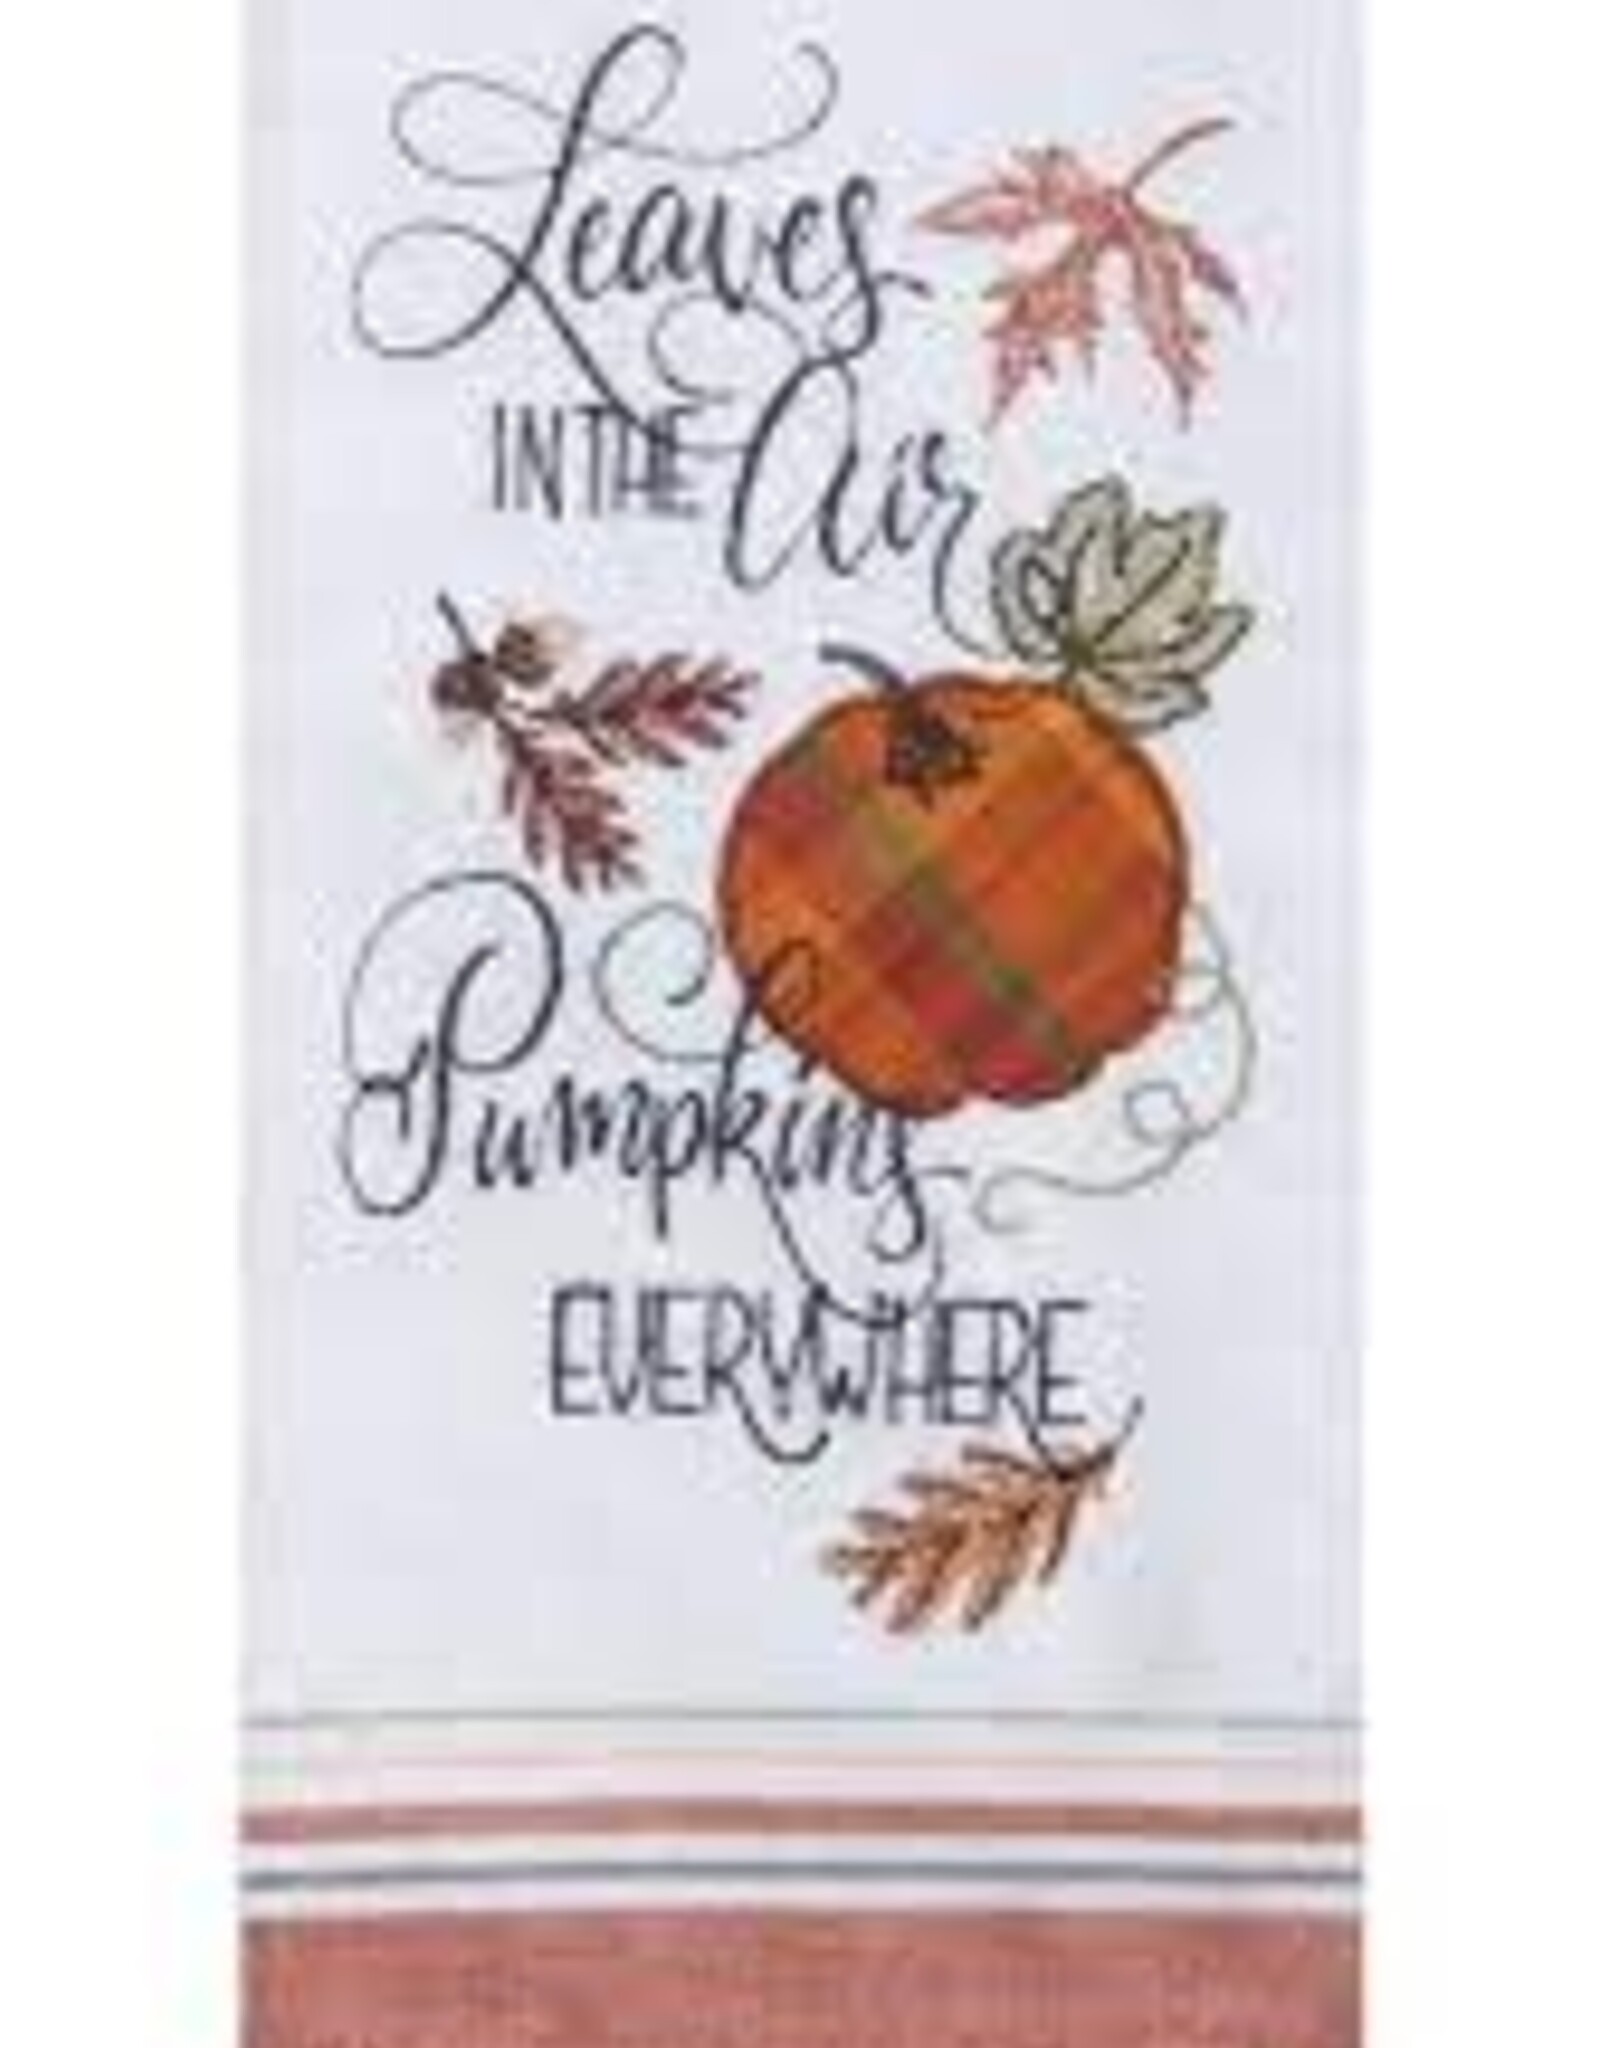 Fall Kay Dee - Leaves in the Air Pumpkins Everywhere Tea Towel